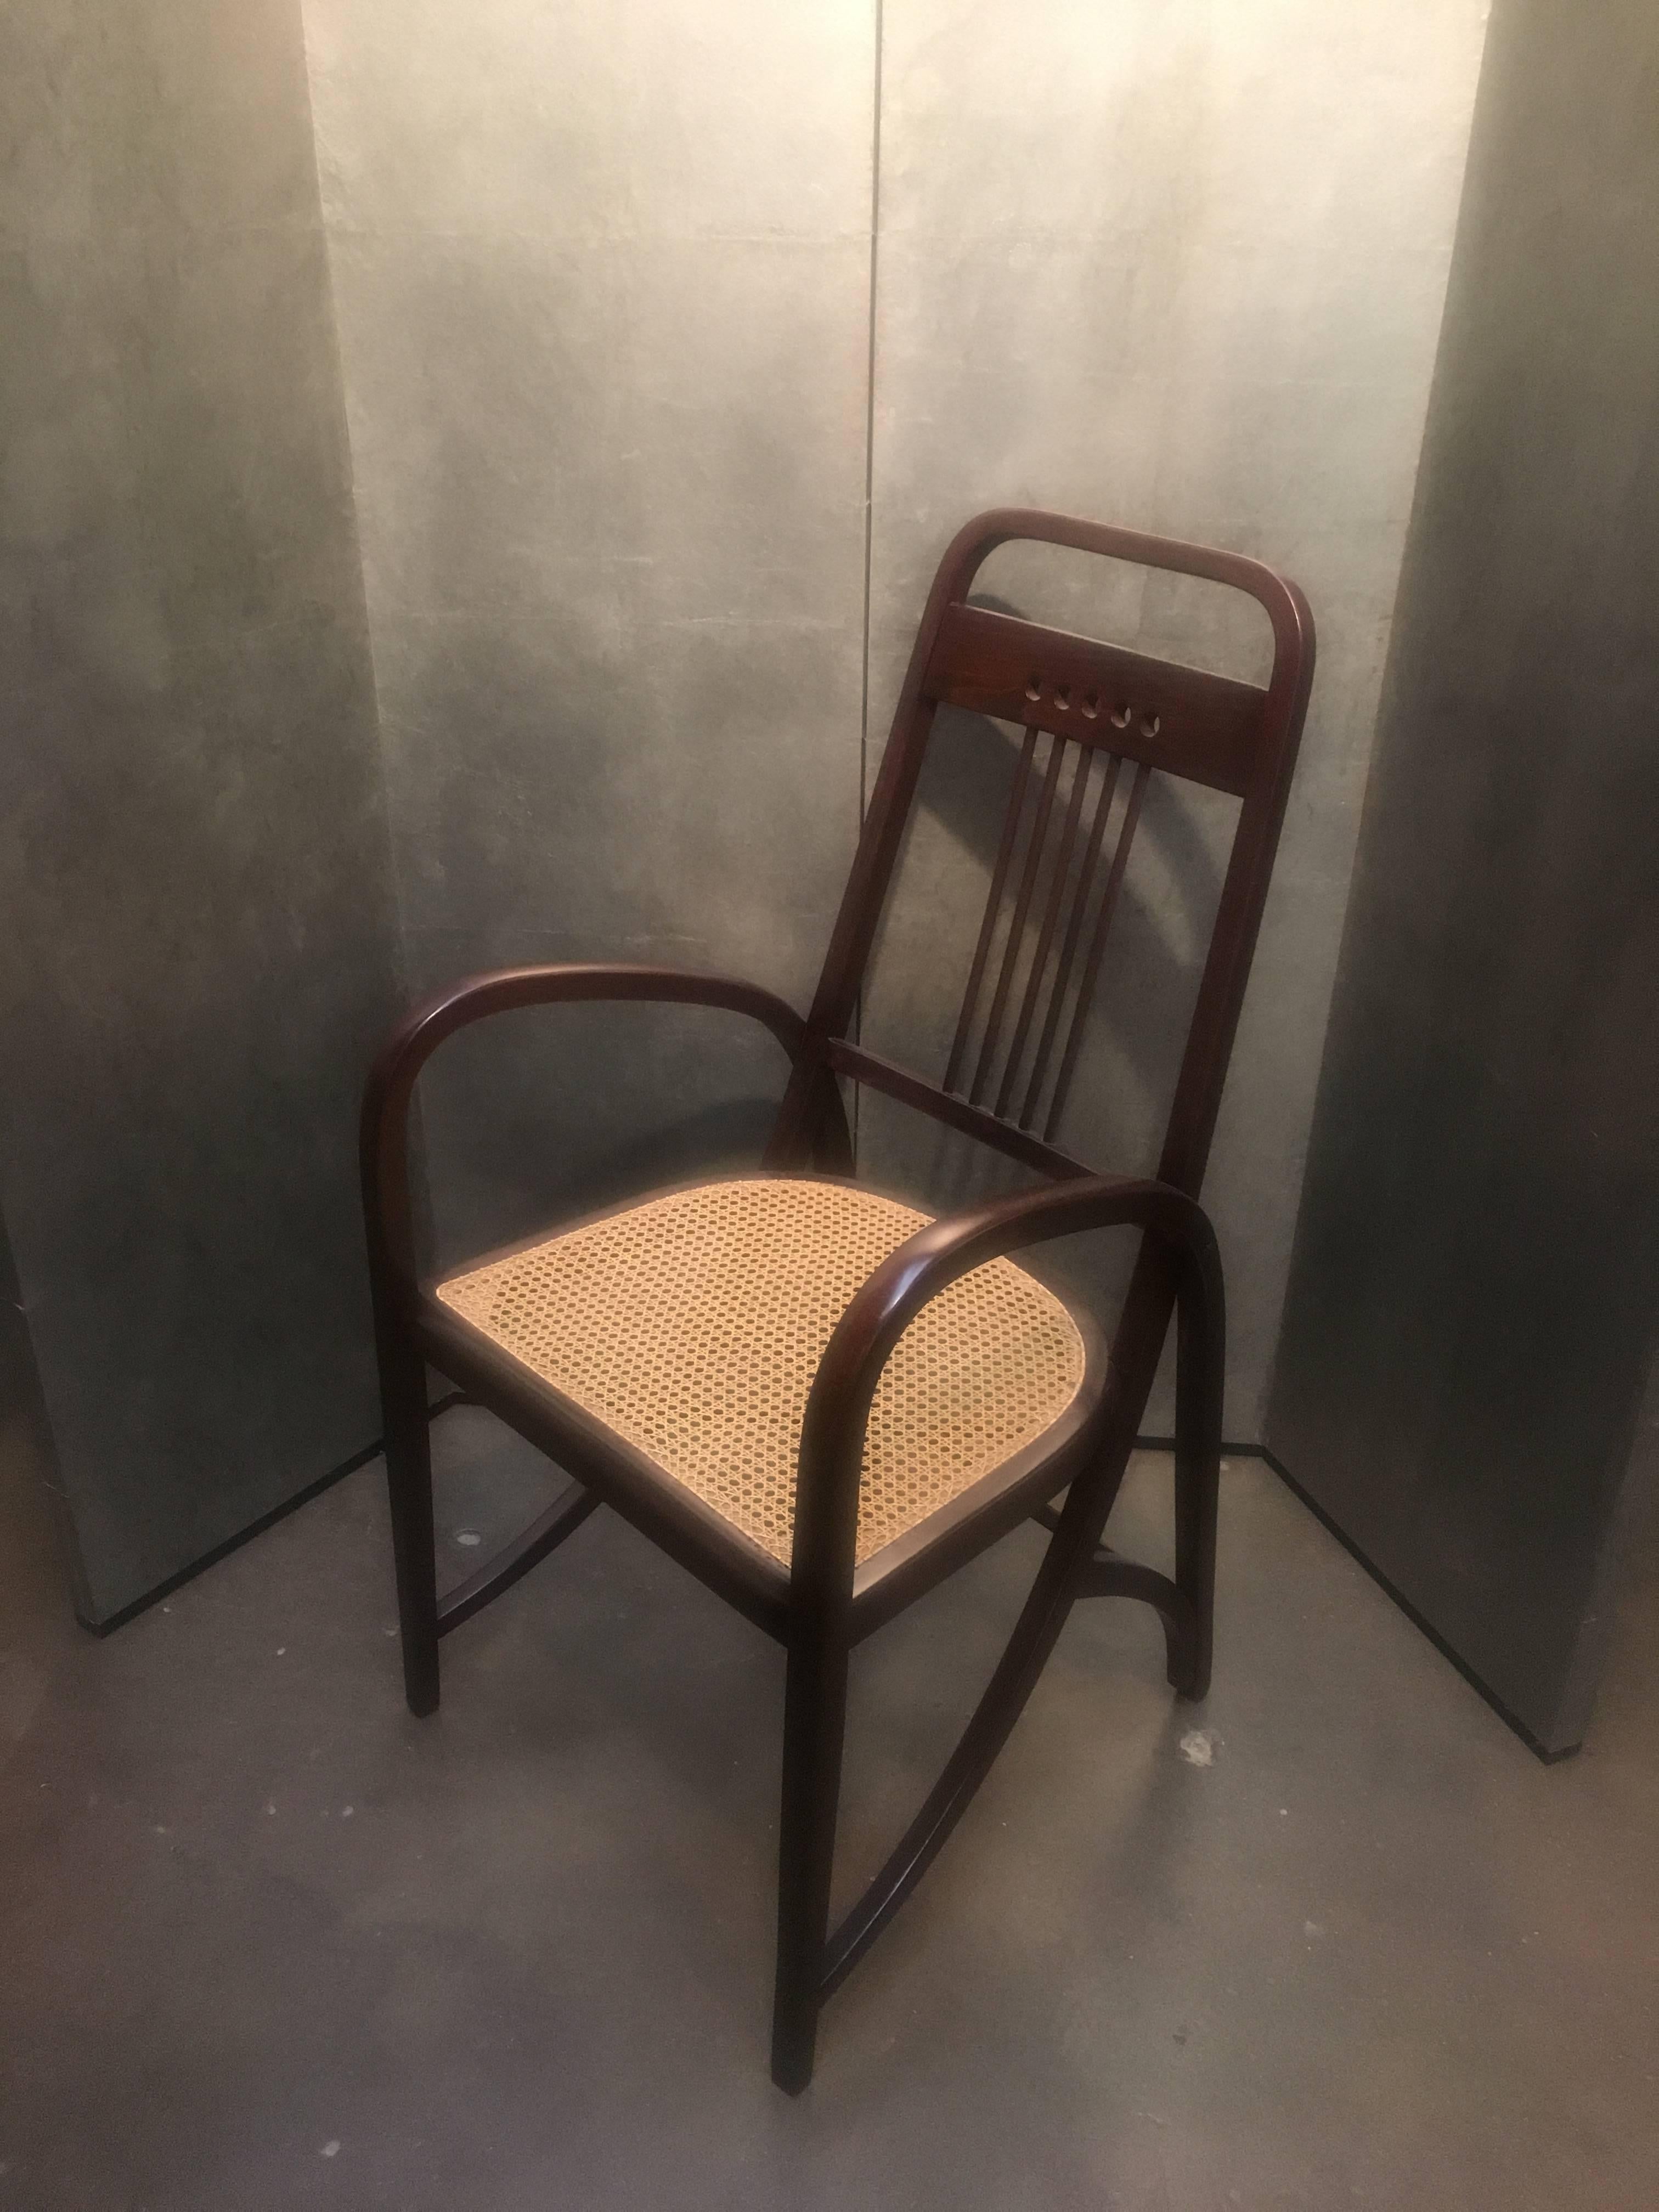 Der ikonische Sessel der Wiener Secession, das Thonet Modell Nr. 511, ein Sessel aus gebogenem Buchenholz, der sich durch klare Linien und schöne Proportionen auszeichnet. Ein Meisterwerk des Designs, einfach und komplex zugleich: Beine und Arme